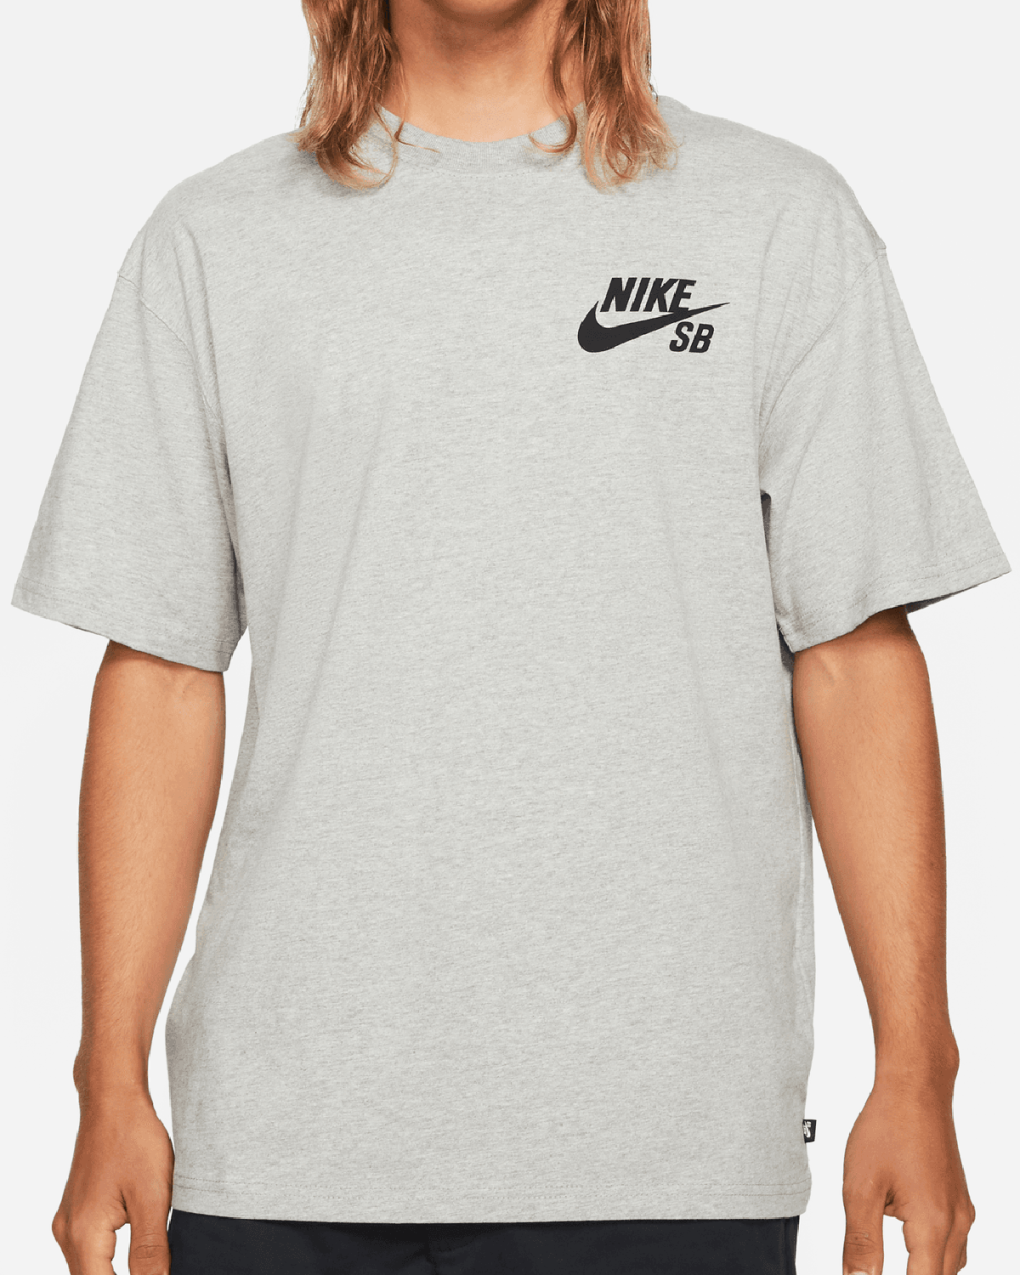 Sidewalk Skateshop - T-shirts - Nike SB - Logo Tee